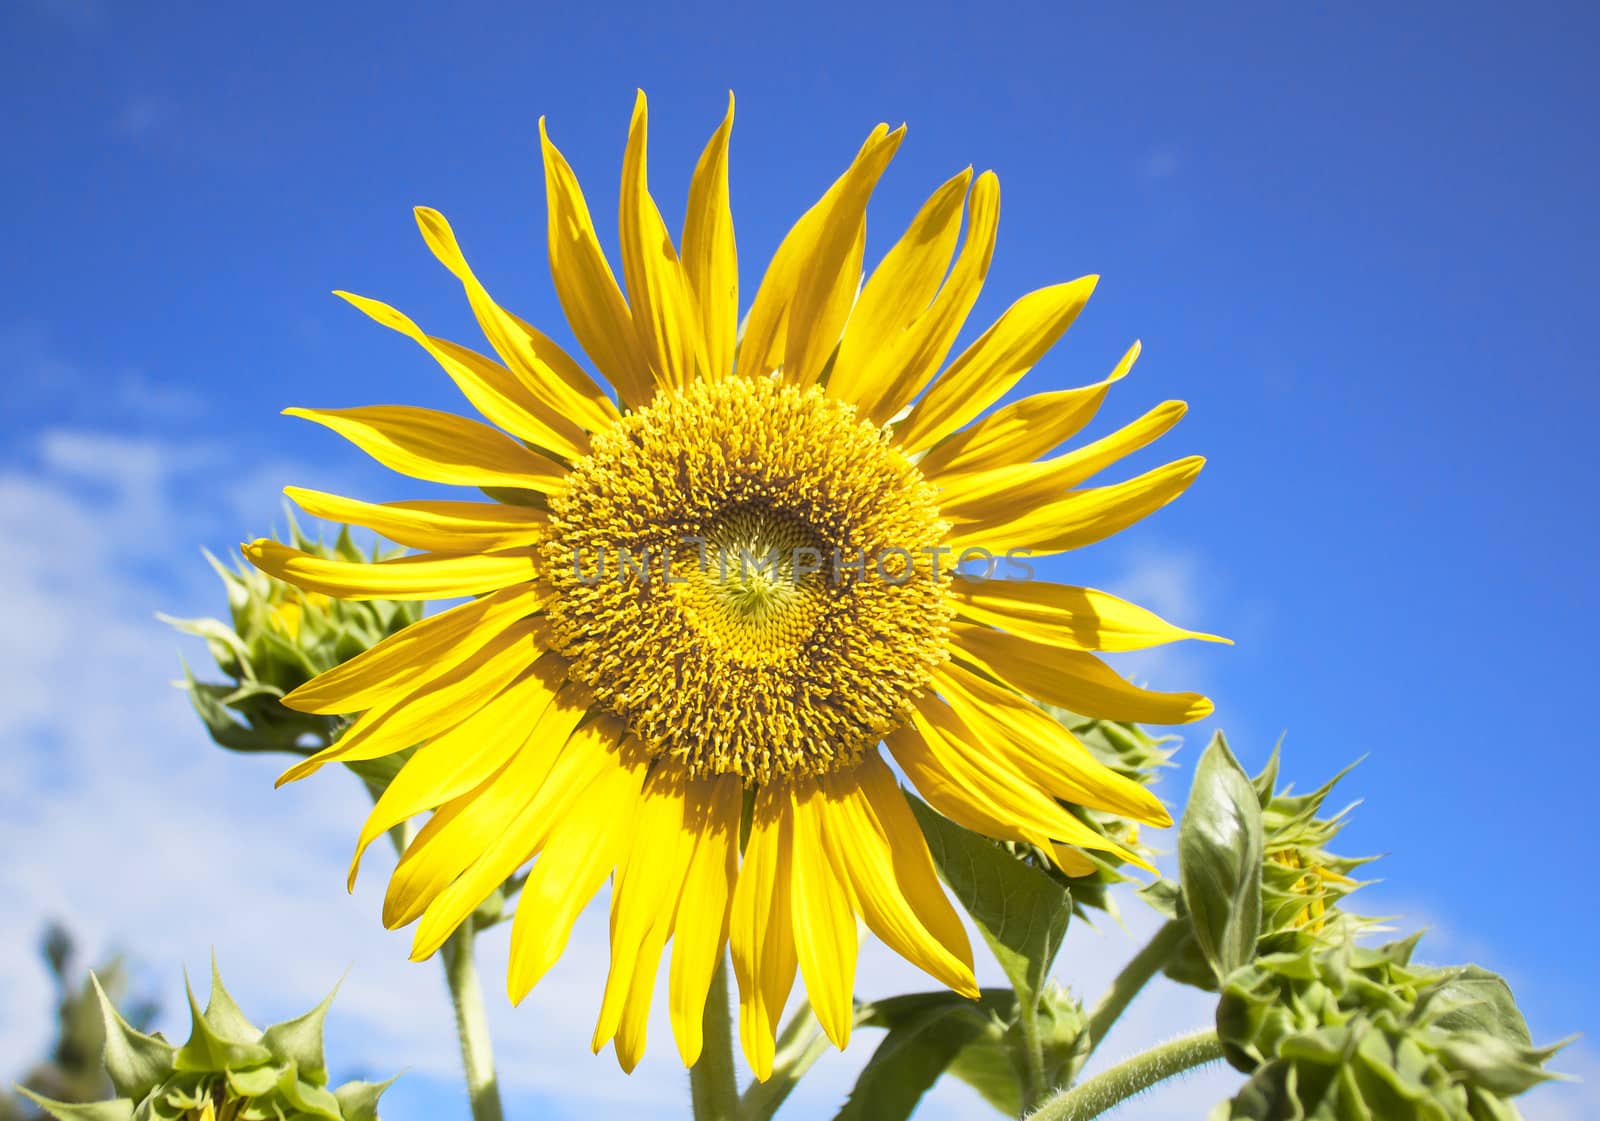 Sunflower by janniwet